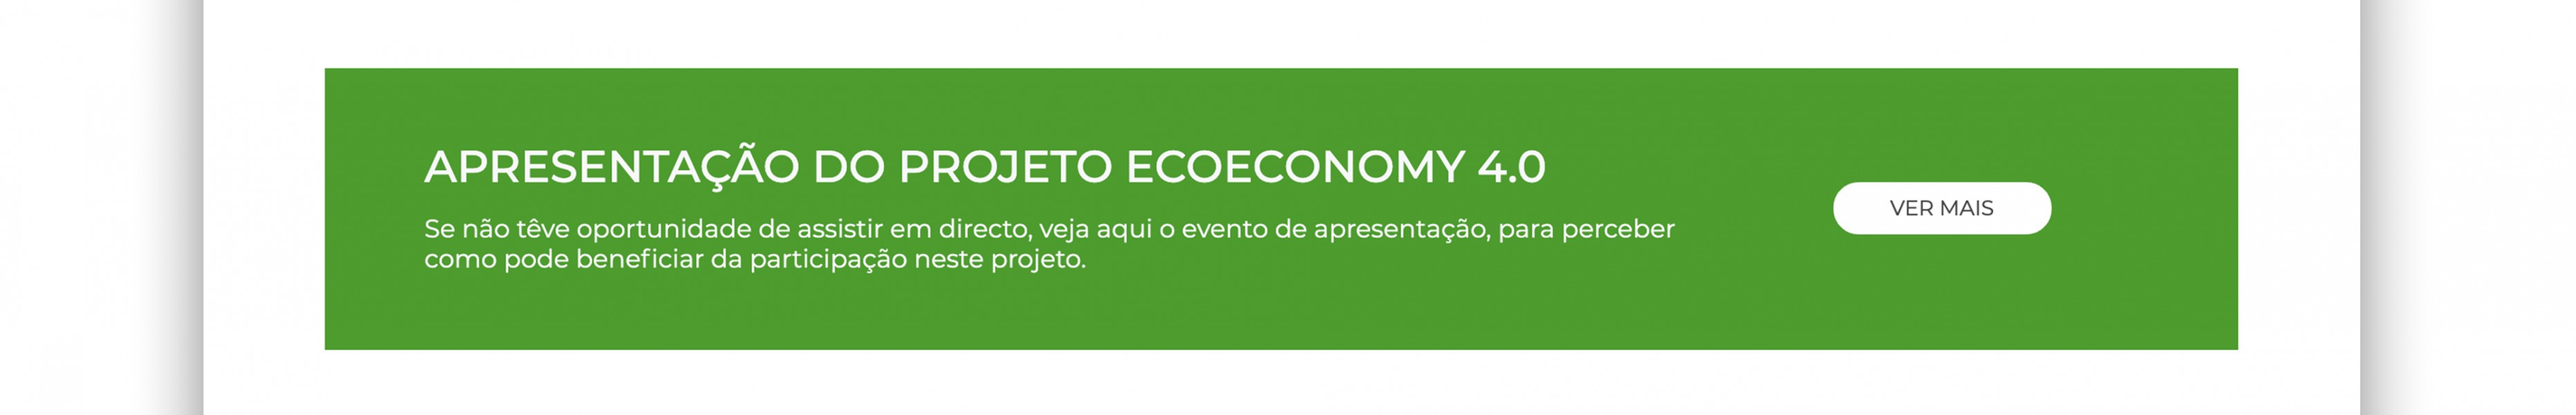 Ecoeconomy